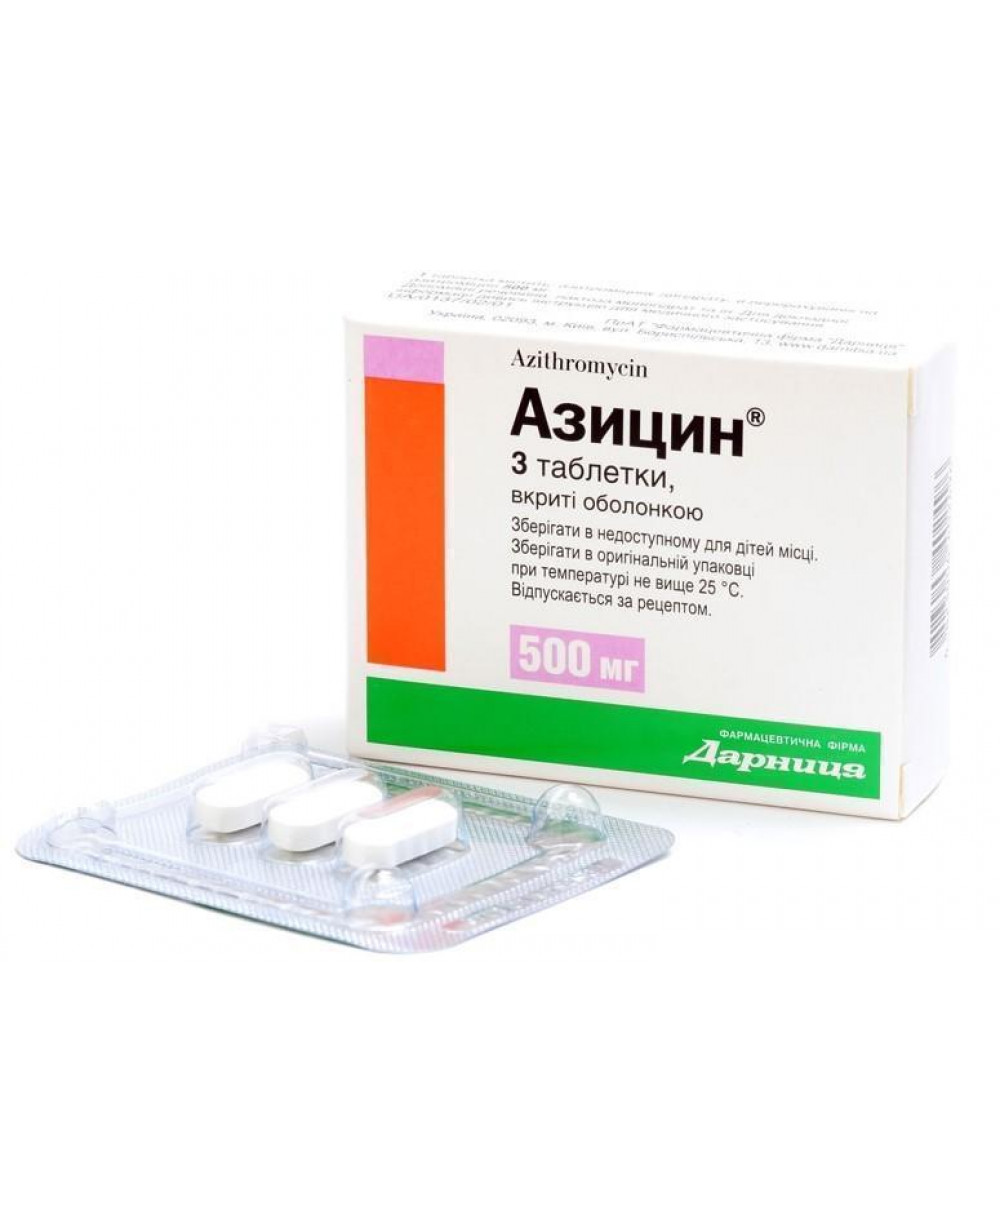 923 ЗАТРИН 500 - Azithromycin